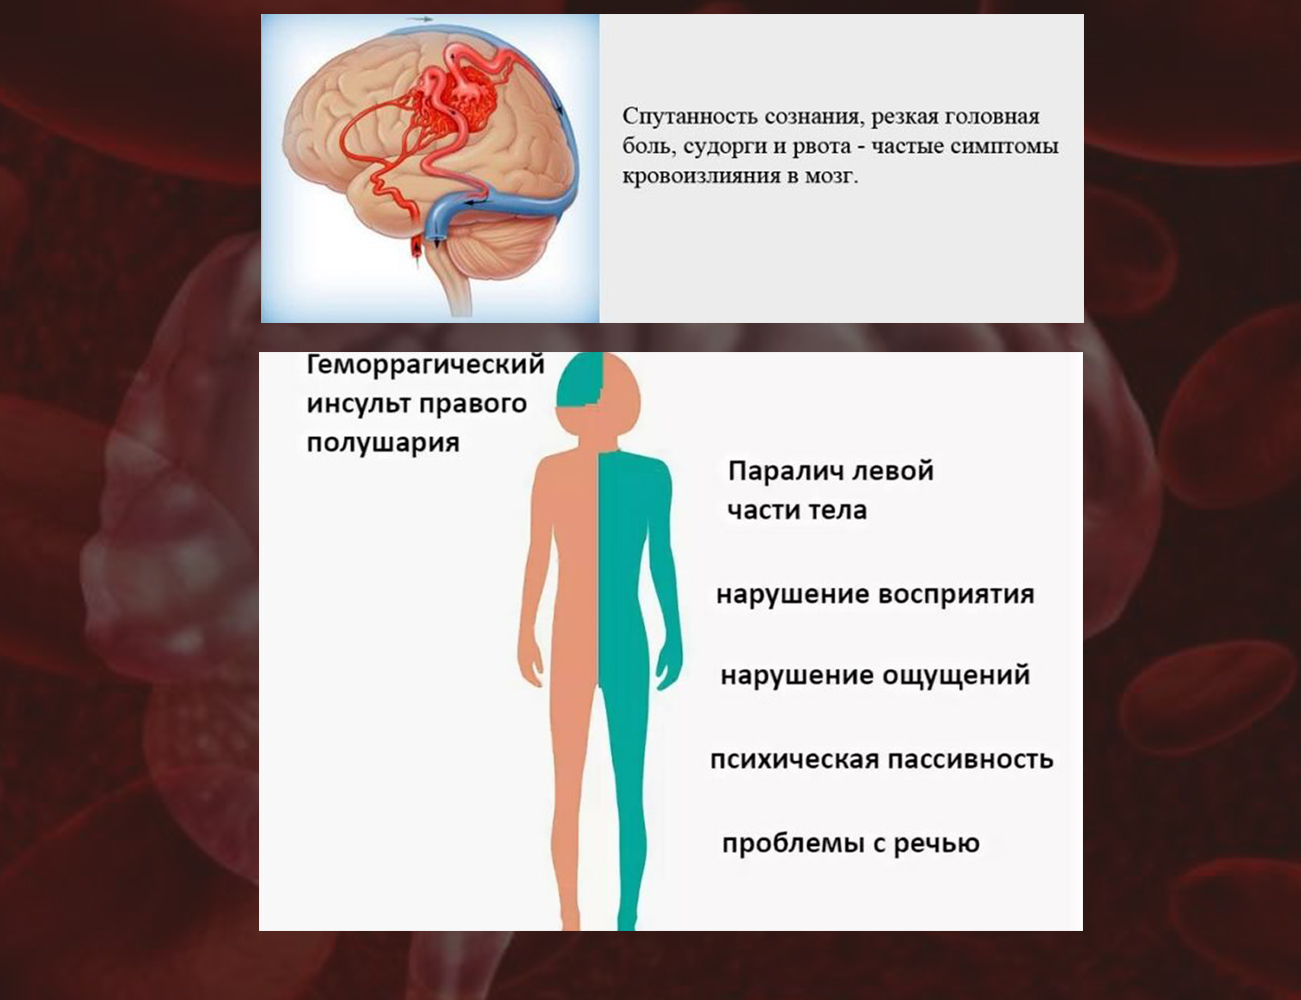 Основные симптомы кровоизлияния в мозг